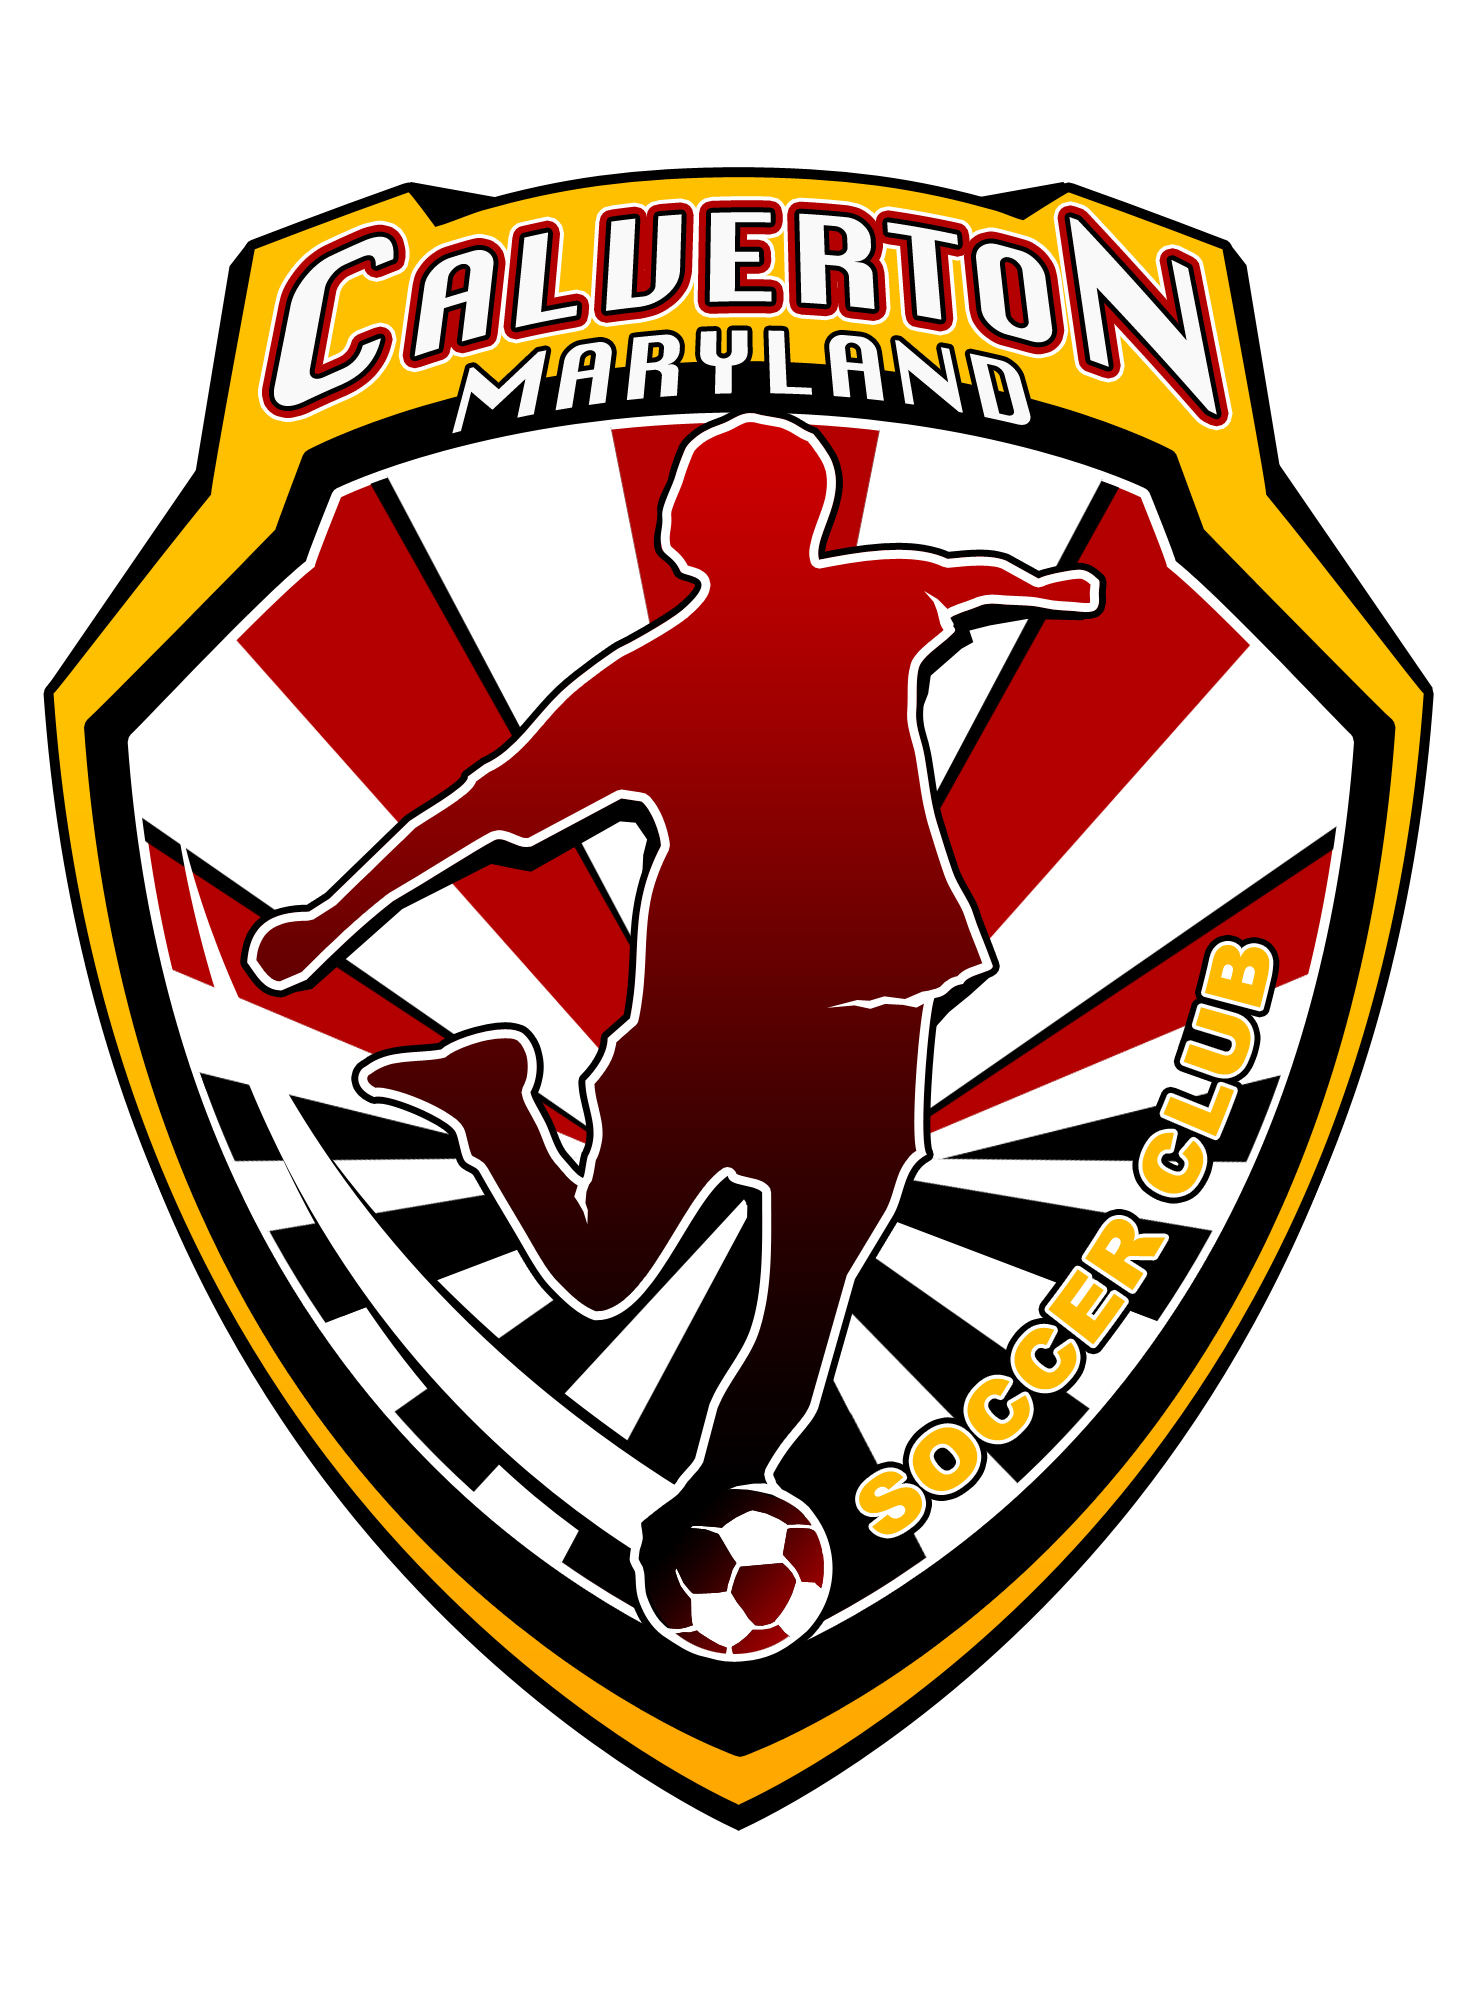 Calverton Soccer Club